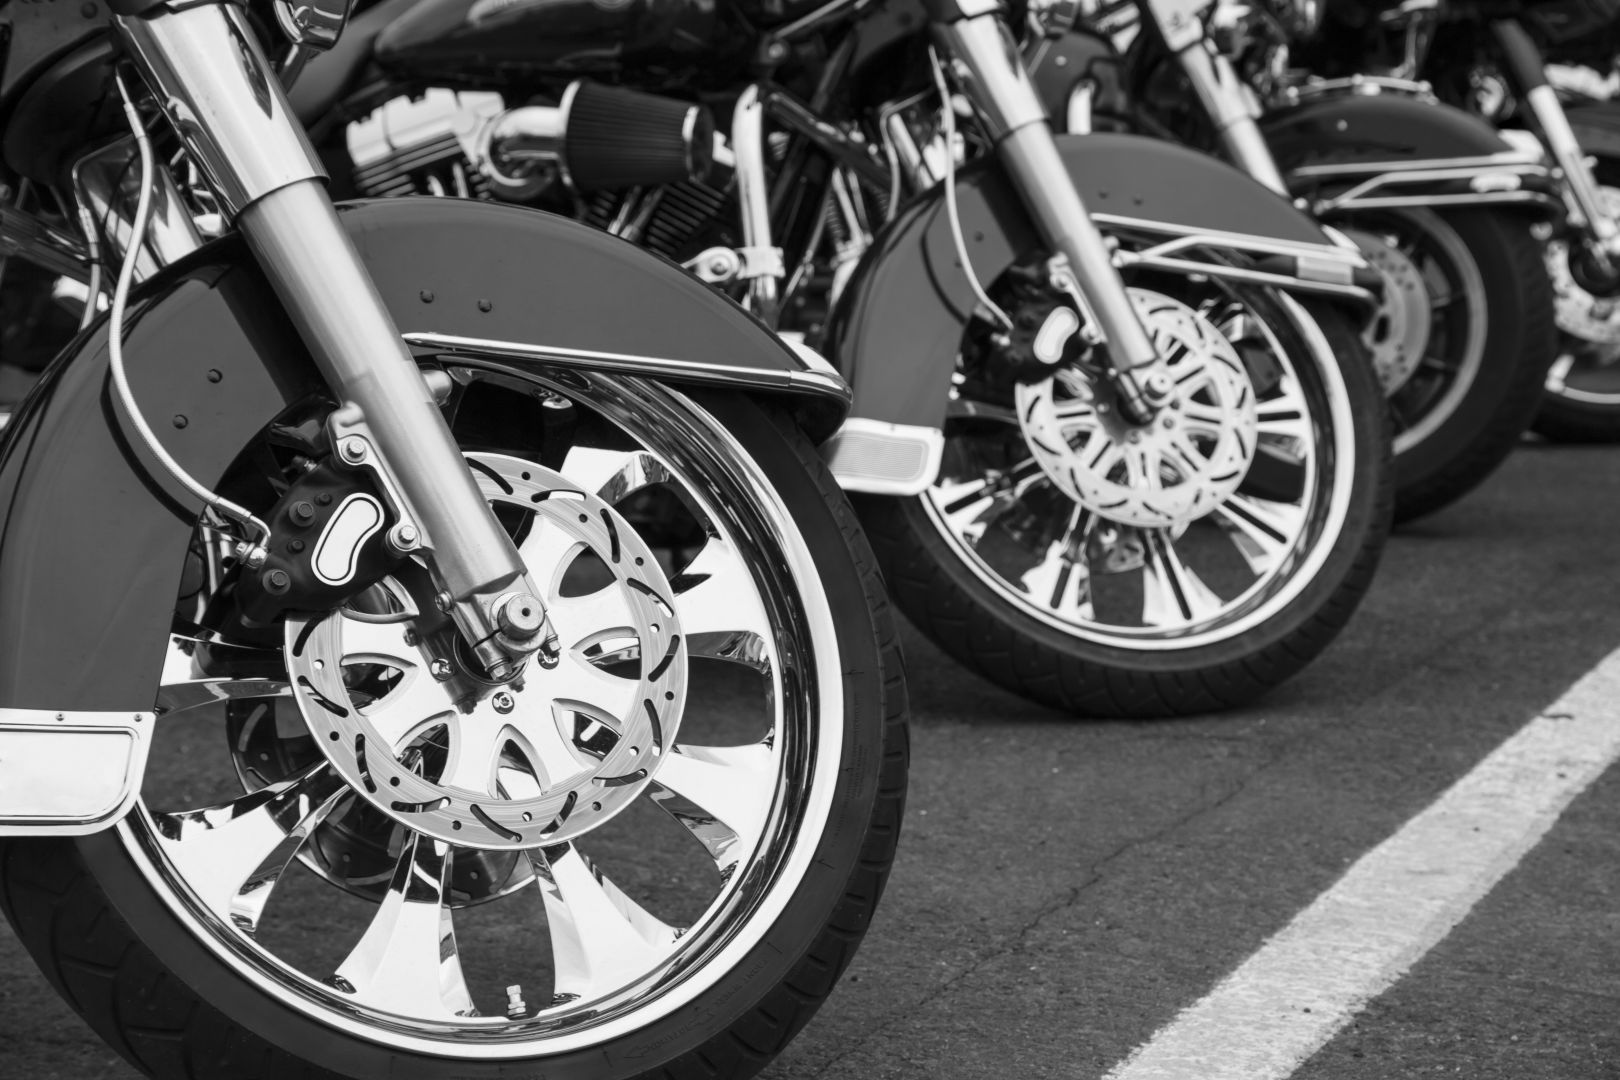 Poptávka na vybavení pro jízdu na silničním motocyklu (Příslušenství a vybavení) - Karlovy Vary